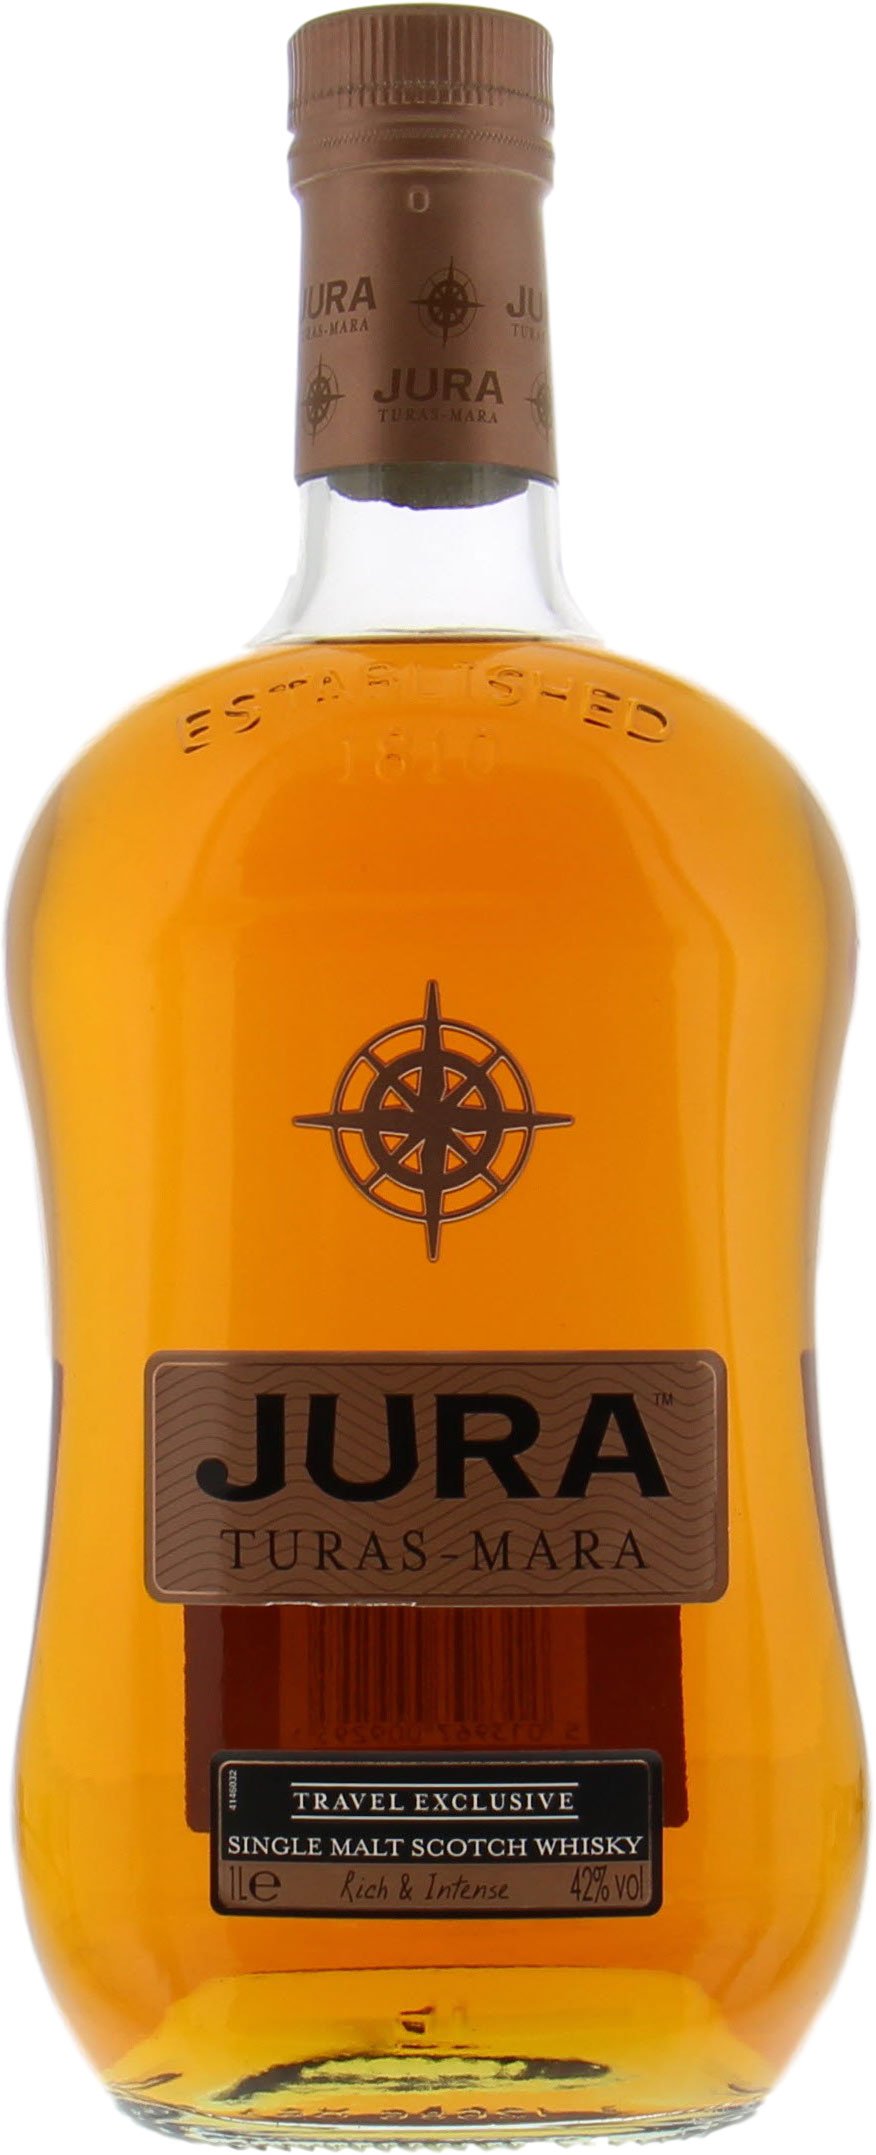 Jura - Turas-Mara 42%  No Original Box Included!